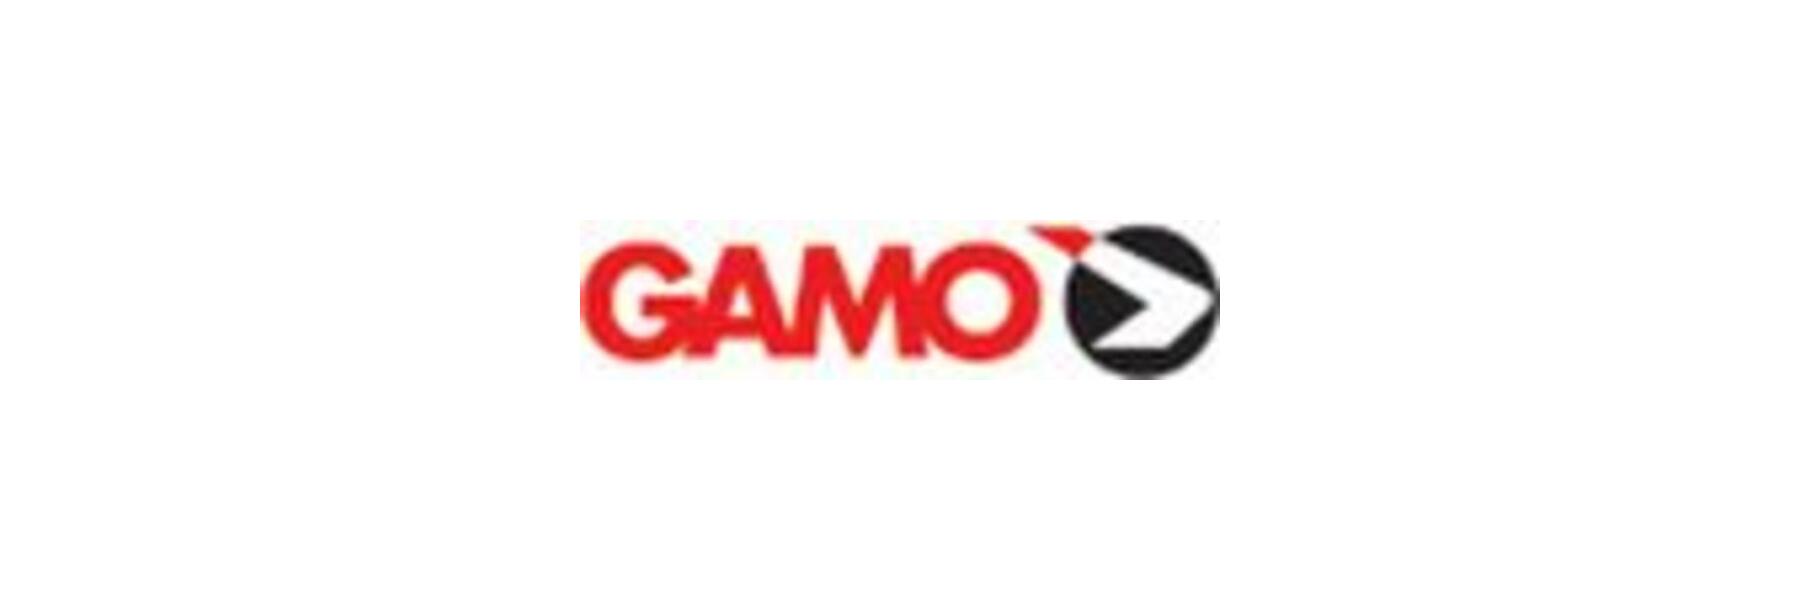  Gamo ist ein f&uuml;hrender Hersteller von...